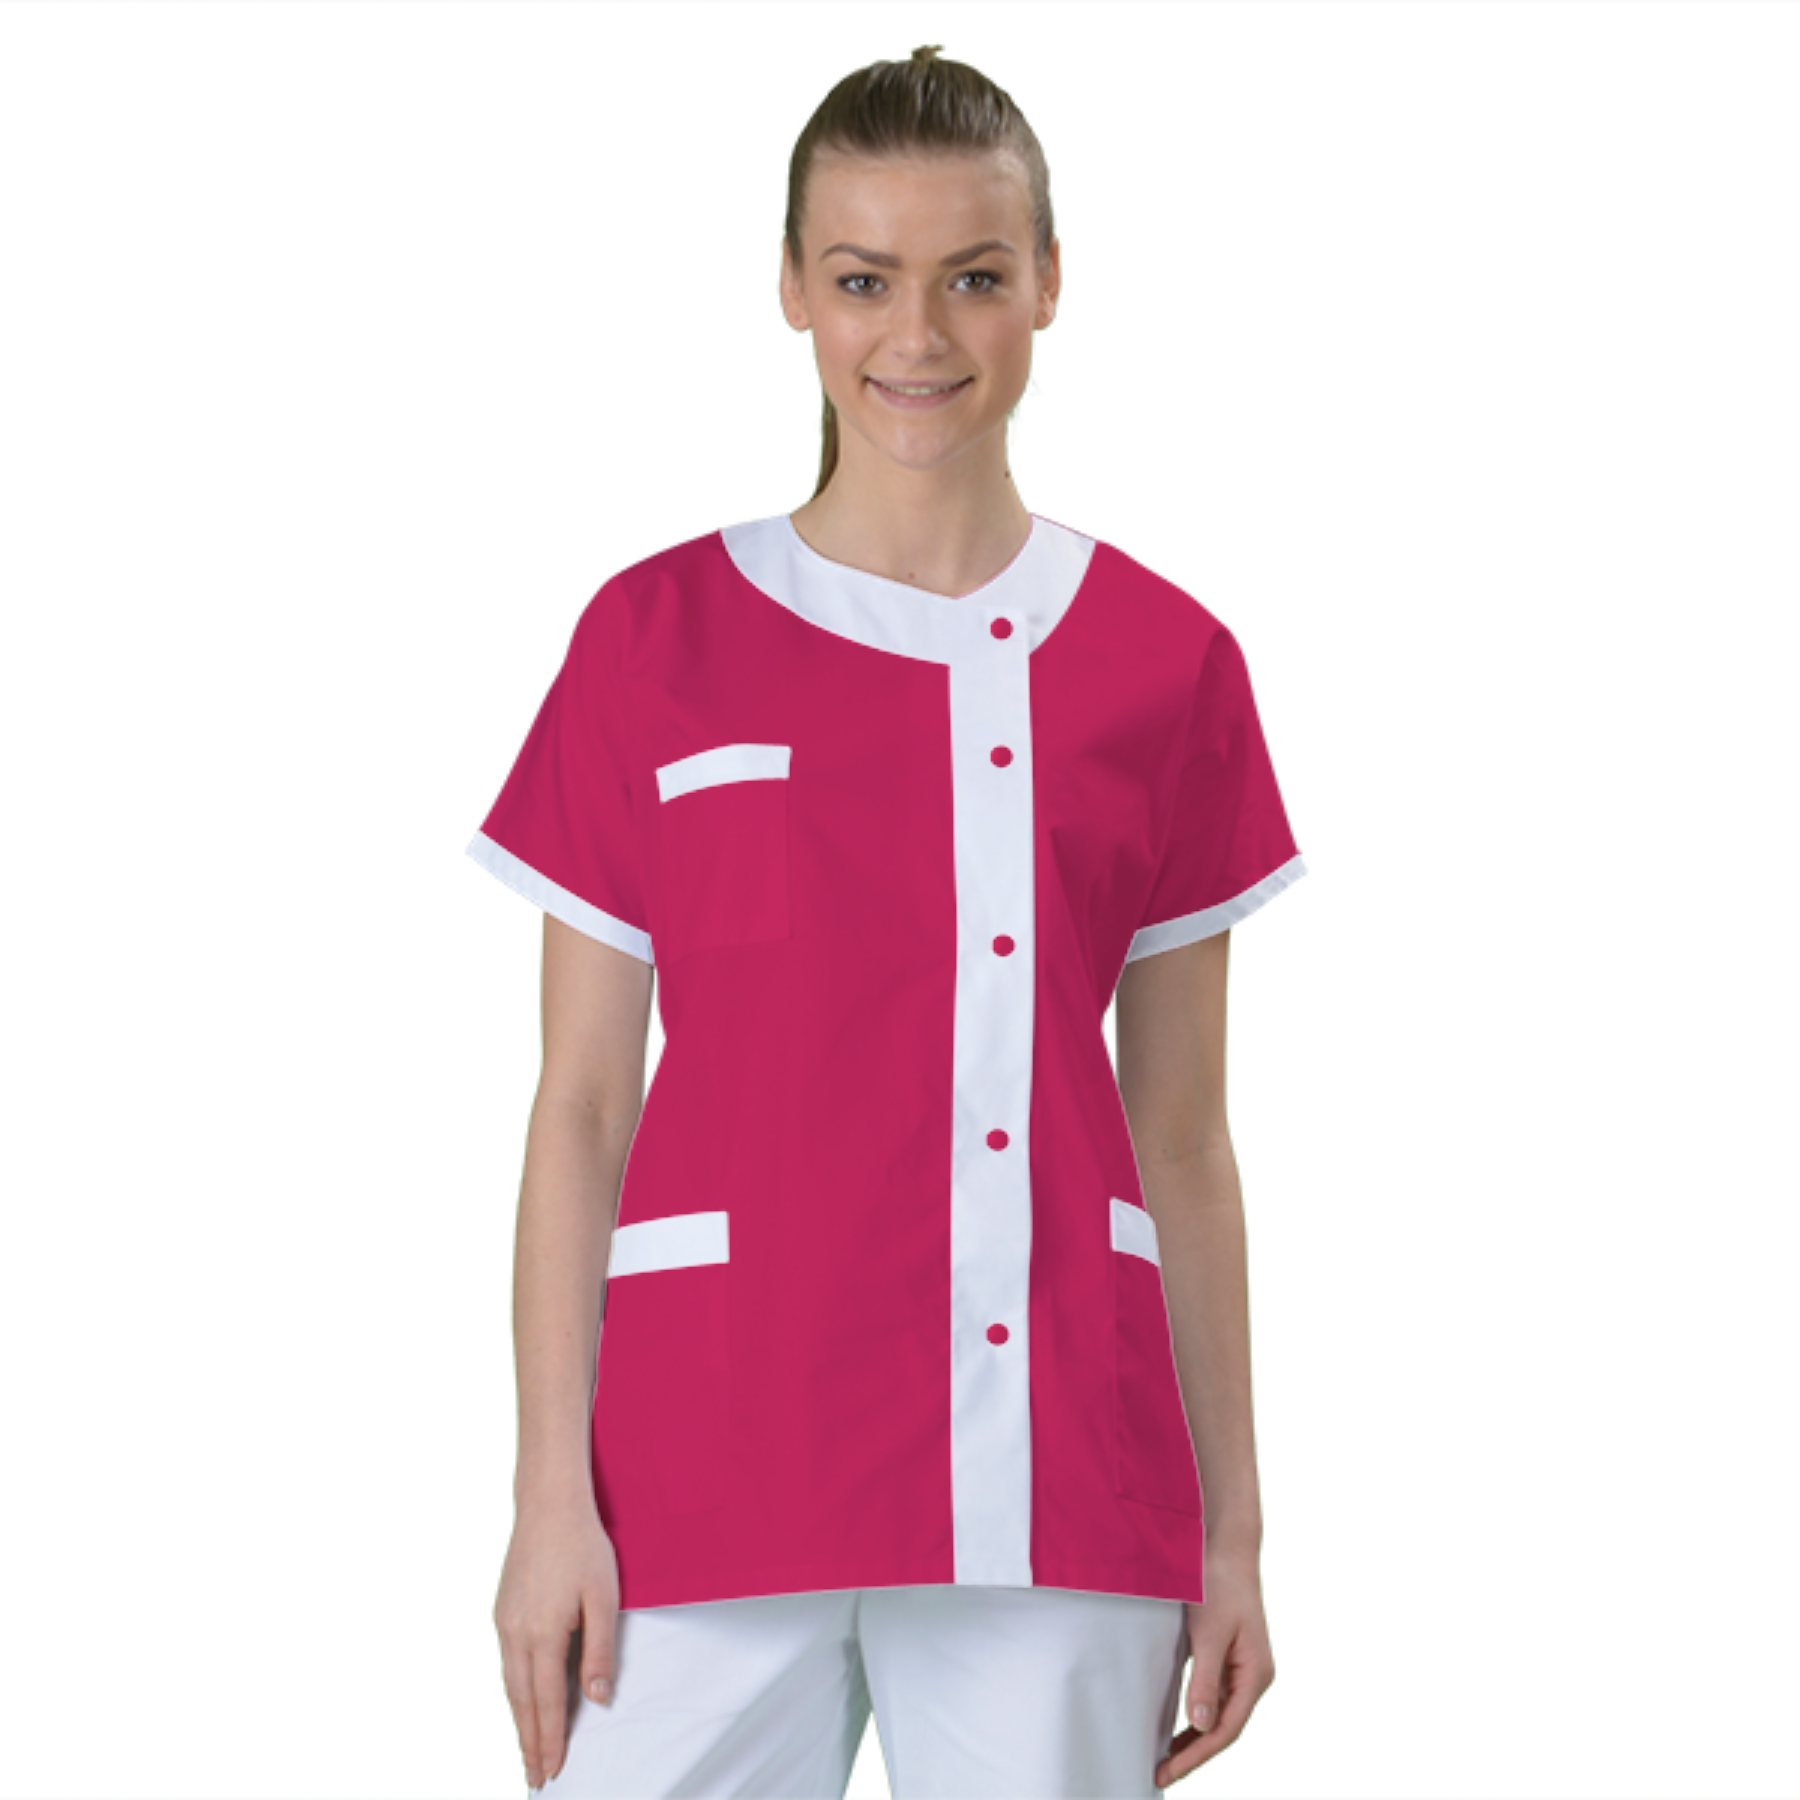 blouse-de-travail-personnalisee-tunique-medicale acheté - par Laetitia - le 11-09-2021